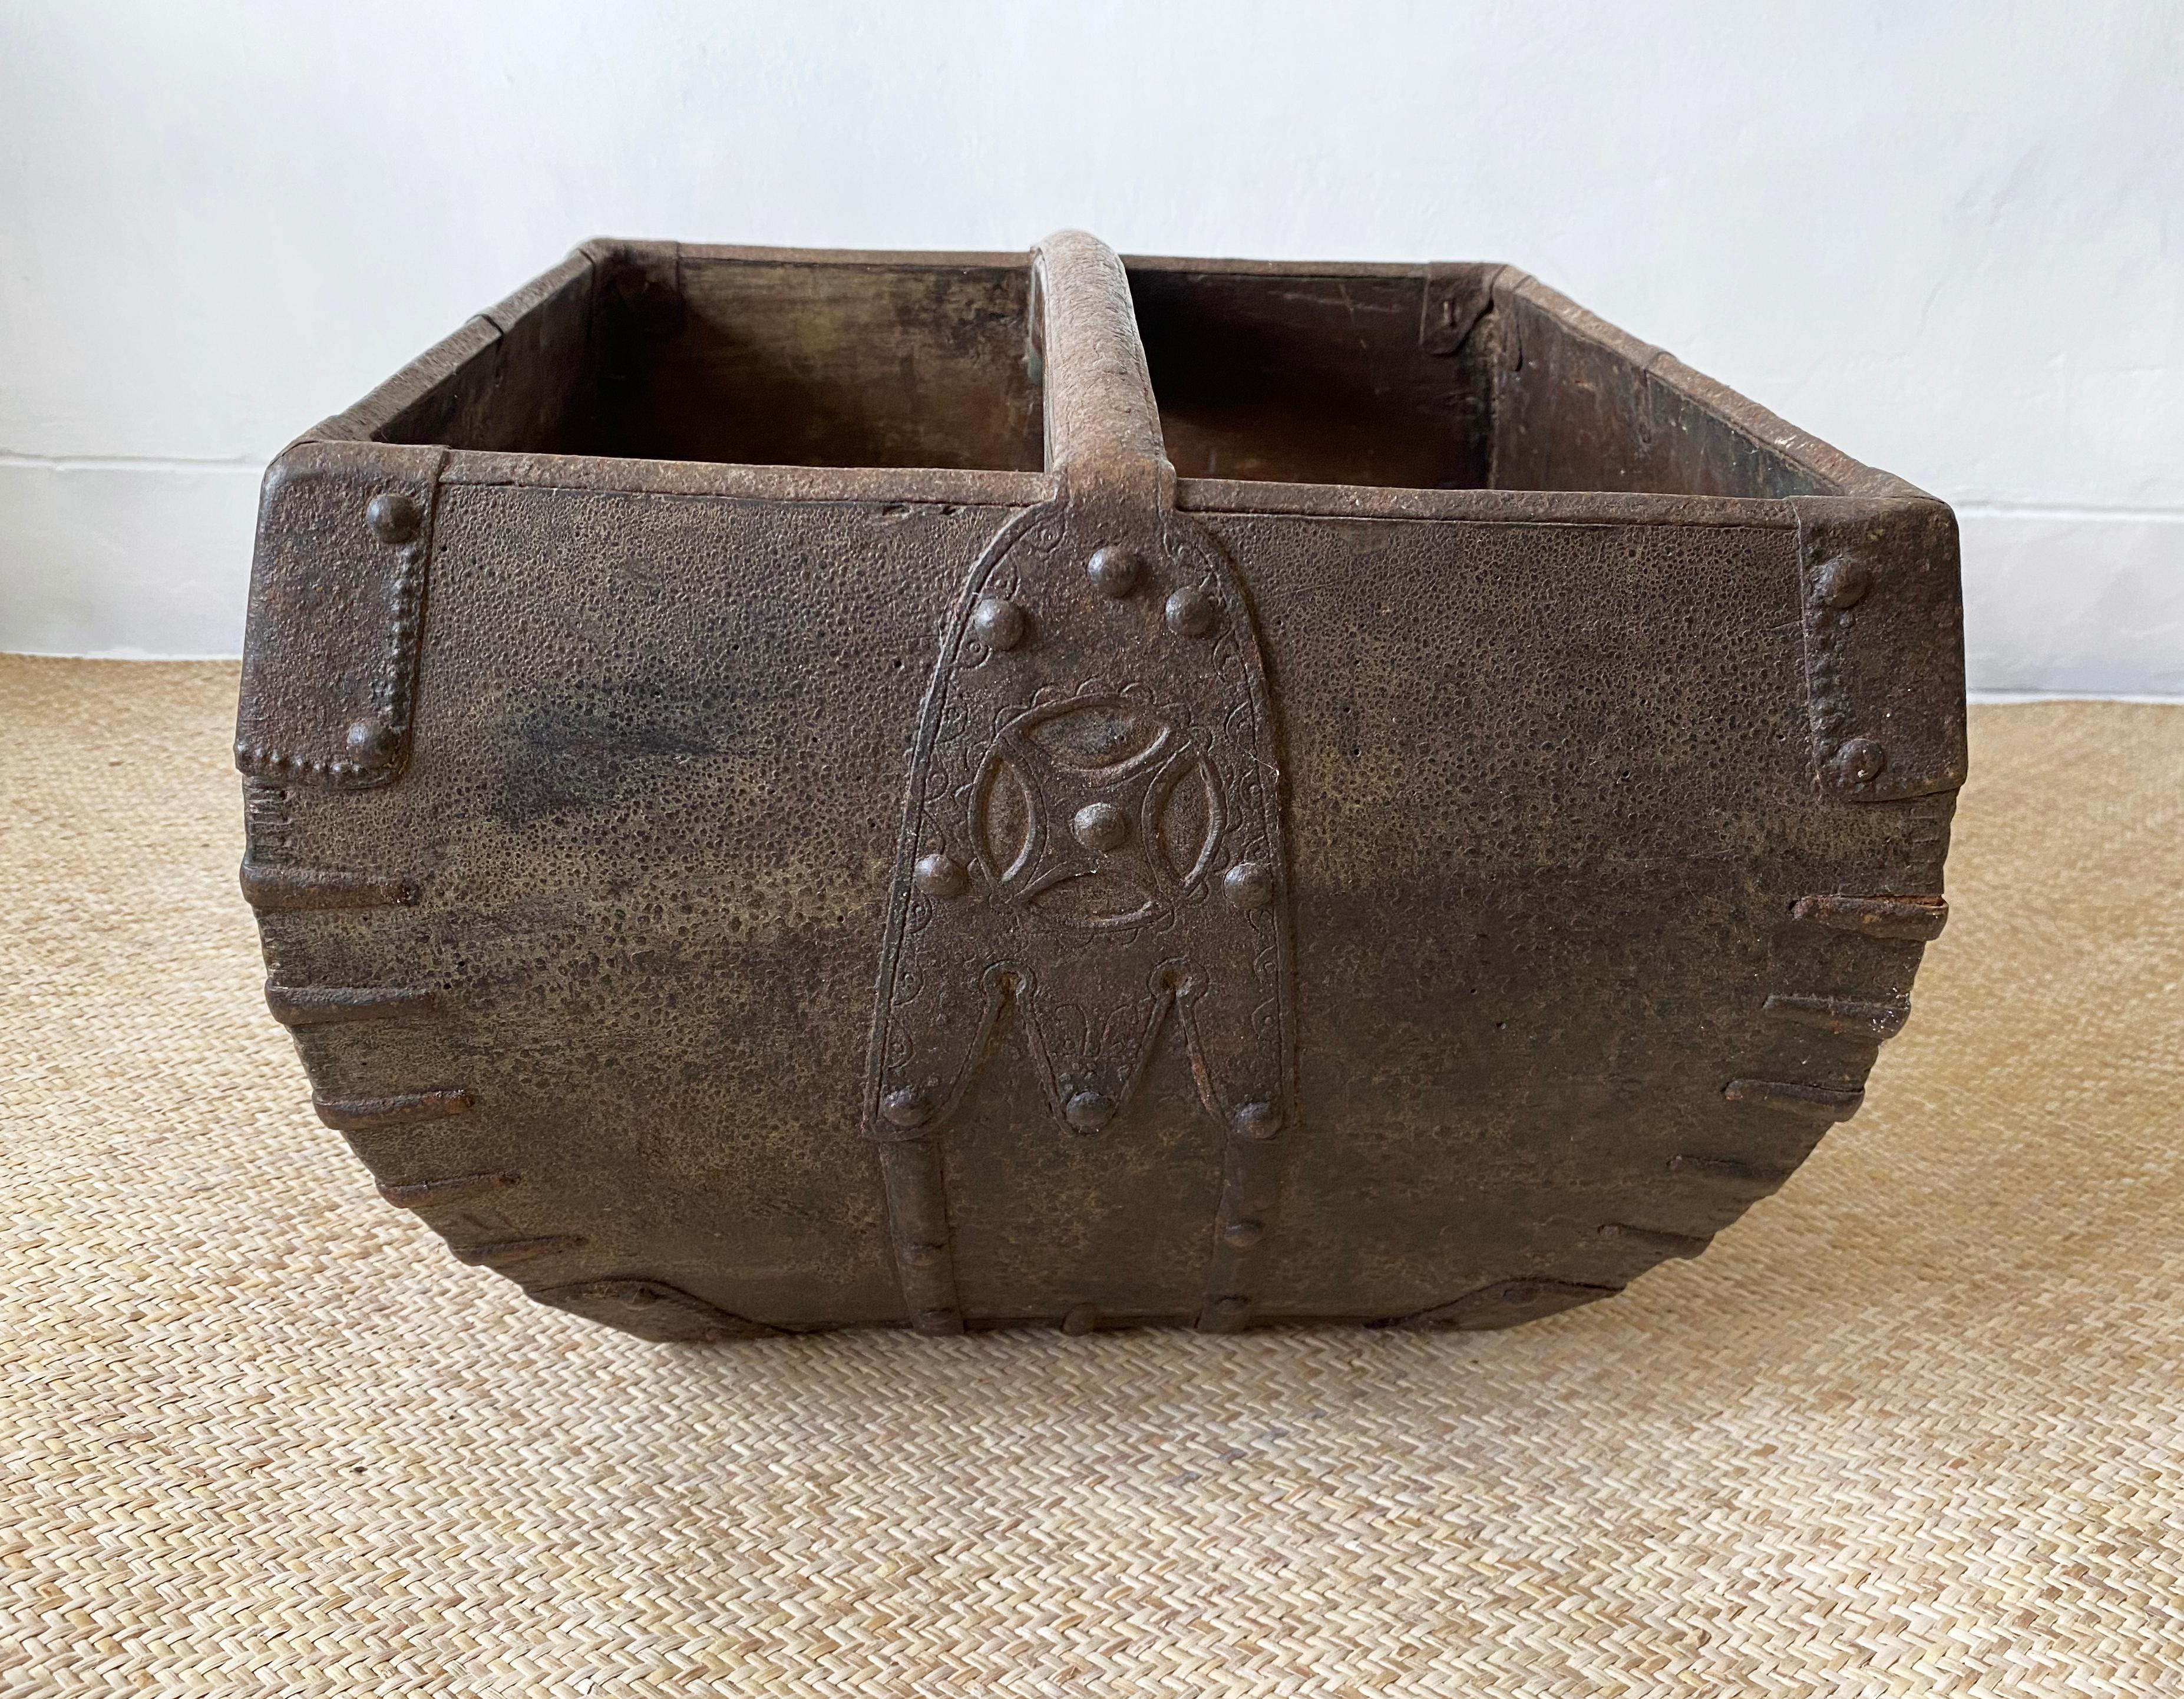 Ein seit über 100 Jahren in Handarbeit hergestellter Reismessbehälter aus Holz mit gravierten Eisenkanten und einem gewölbten Griff. Das Metall und das Holz weisen eine wunderbare altersbedingte Patina auf. Der Behälter fasst ein Dou Reis, eine